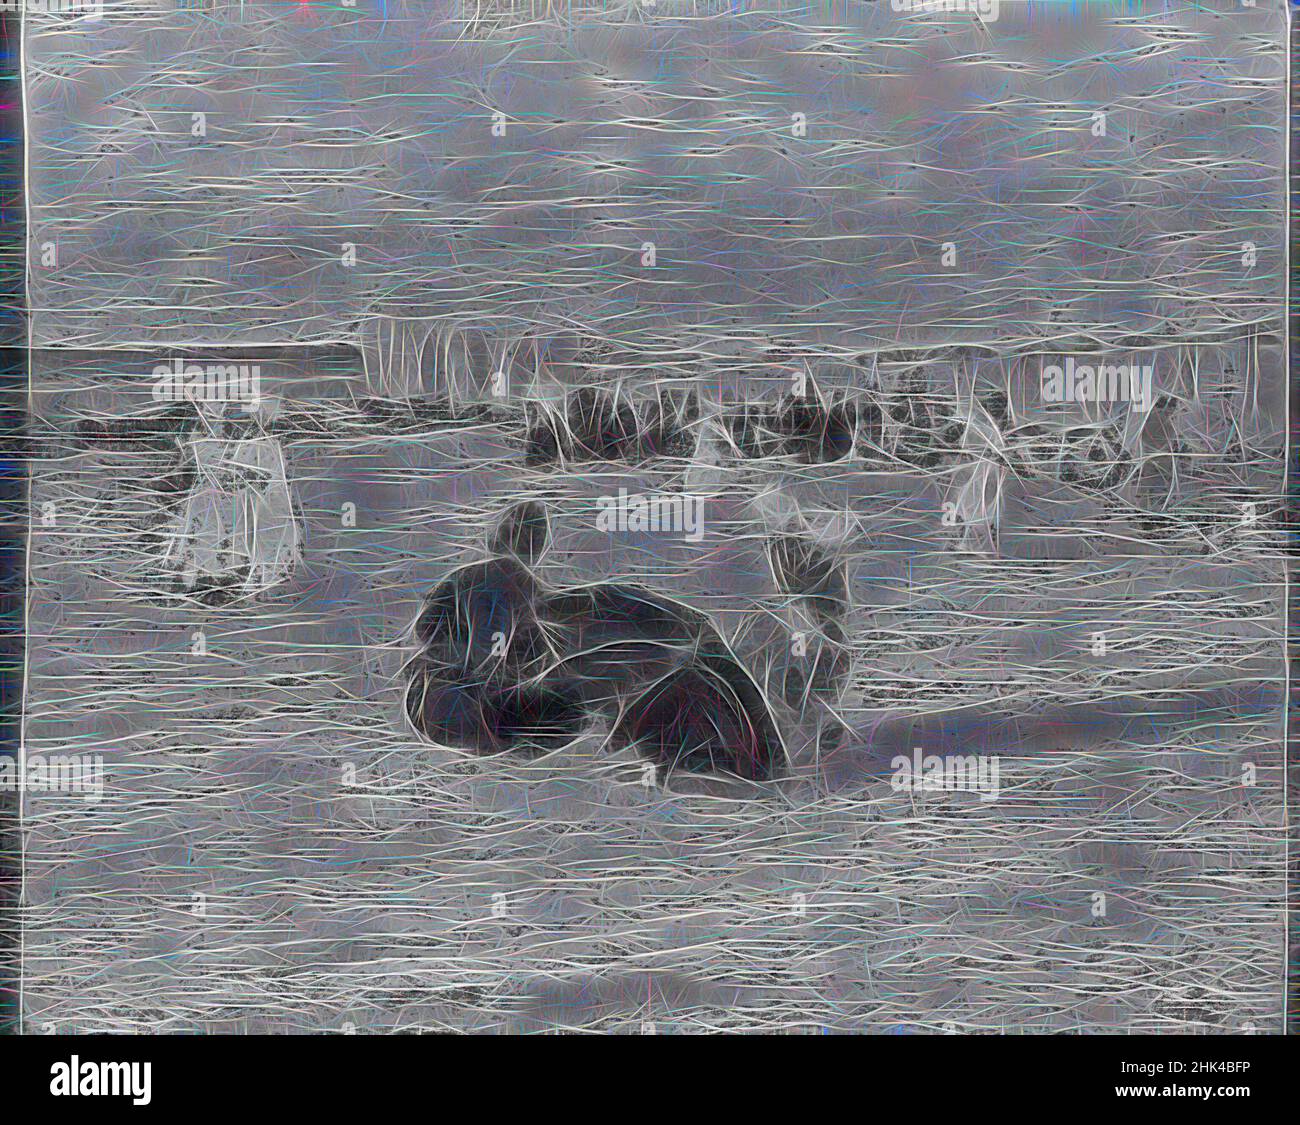 Ispirato alla spiaggia - Scheveningen, Lilian Haines Crittenden, americano, 1858-1919, pastello su carta vetrata di smeriglio, n. 00, 9 1/2 x 12 3/16 pollici, 24,1 x 31 cm, astratto, bello, reinventato da Artotop. L'arte classica reinventata con un tocco moderno. Design di calda e allegra luminosità e di raggi di luce. La fotografia si ispira al surrealismo e al futurismo, abbracciando l'energia dinamica della tecnologia moderna, del movimento, della velocità e rivoluzionando la cultura Foto Stock